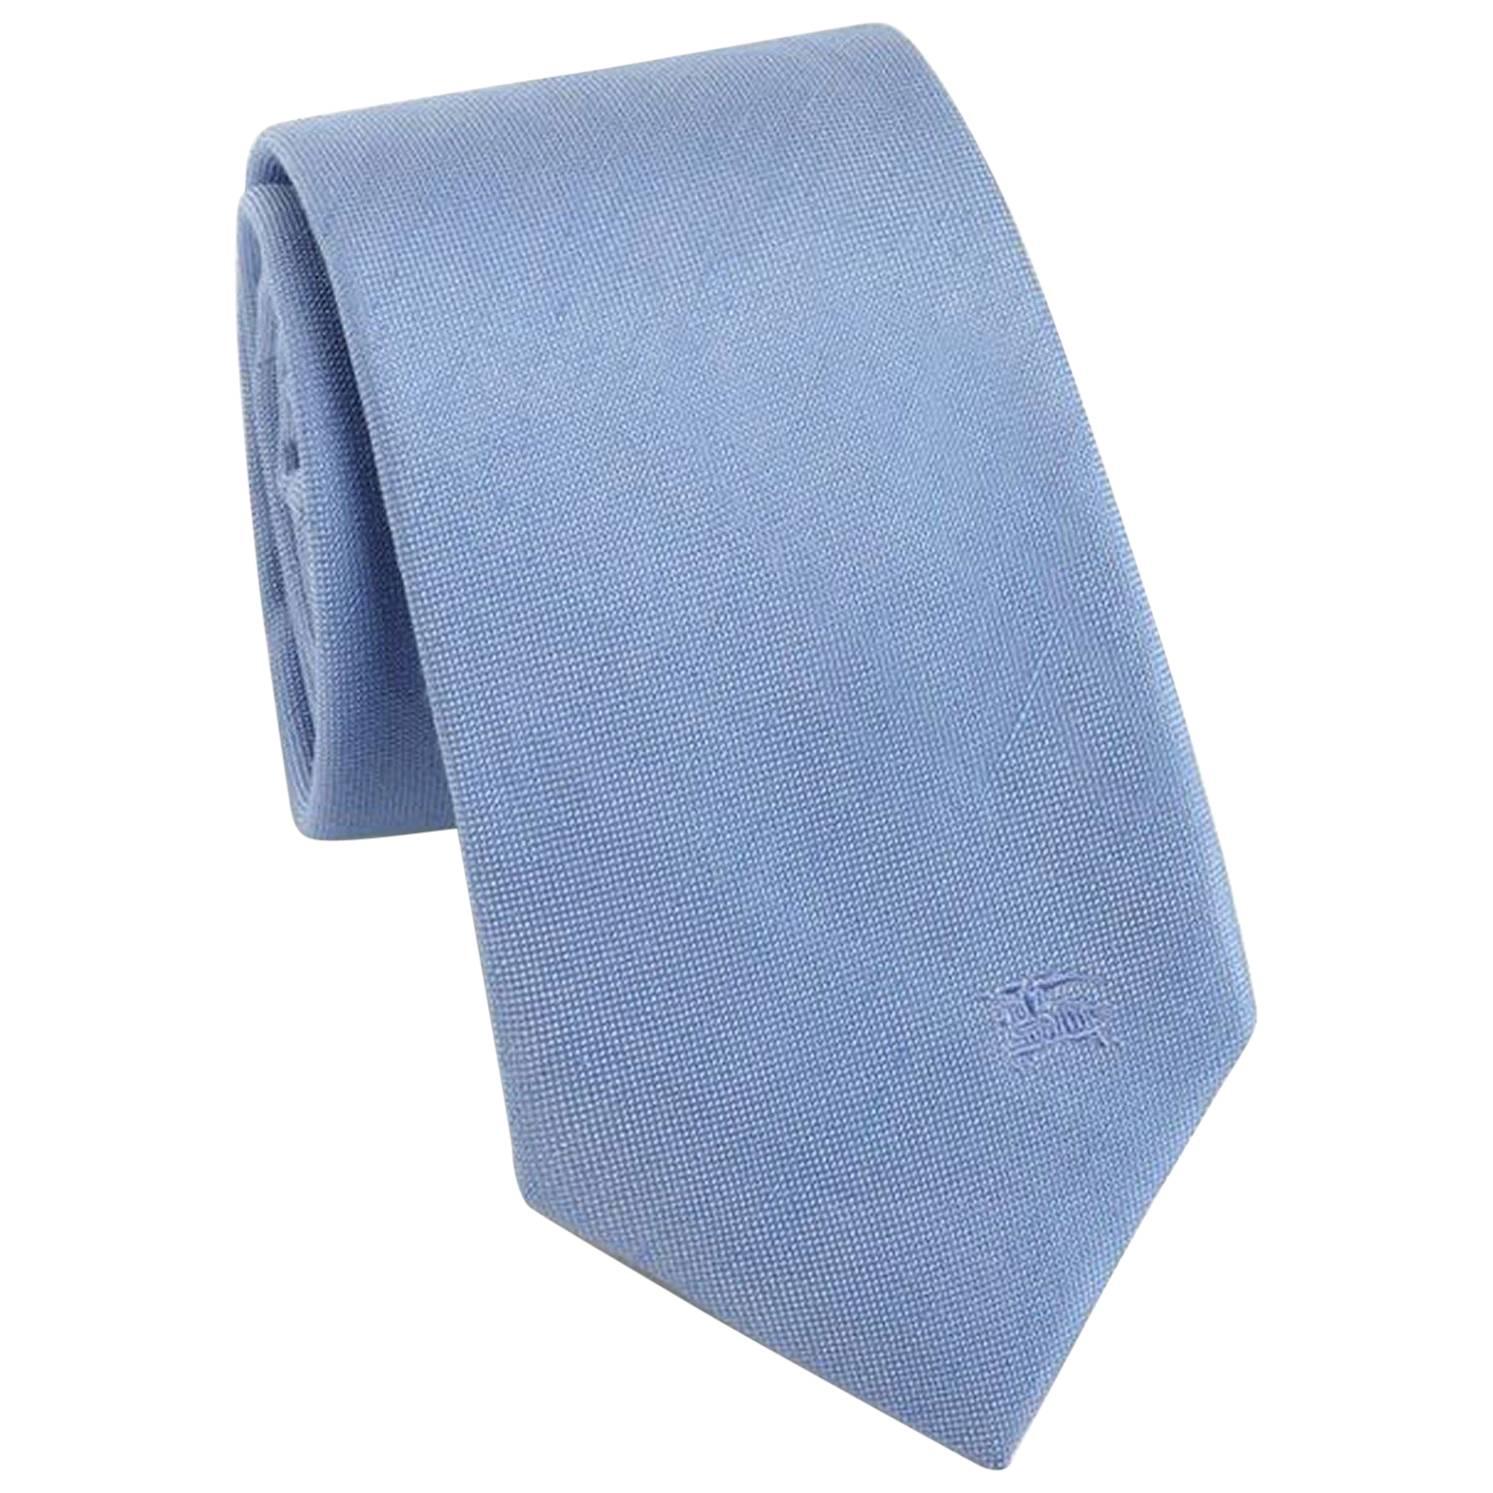 Burberry Rohan Silk Powder Blue Tie - Size: 3” (8cm) For Sale